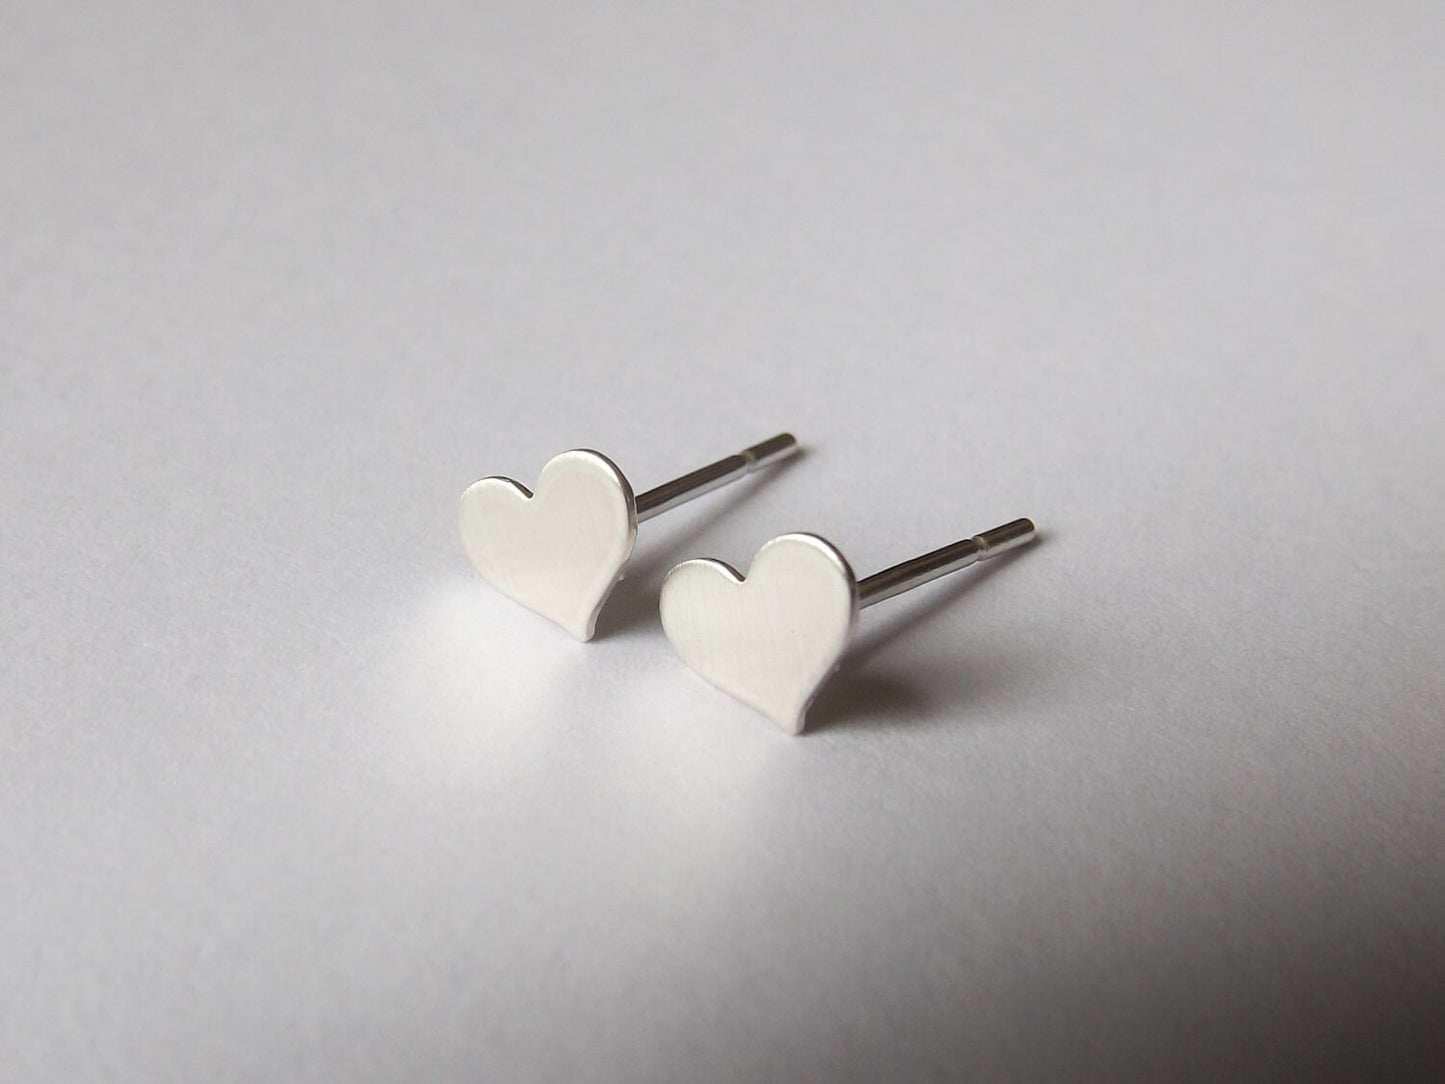 Tiny Heart Earrings,Small Heart Earrings,Heart Earrings,Matte Earrings,Stud Earrings,Valentines Earrings,Modern Jewelry,Minimalist,Gift